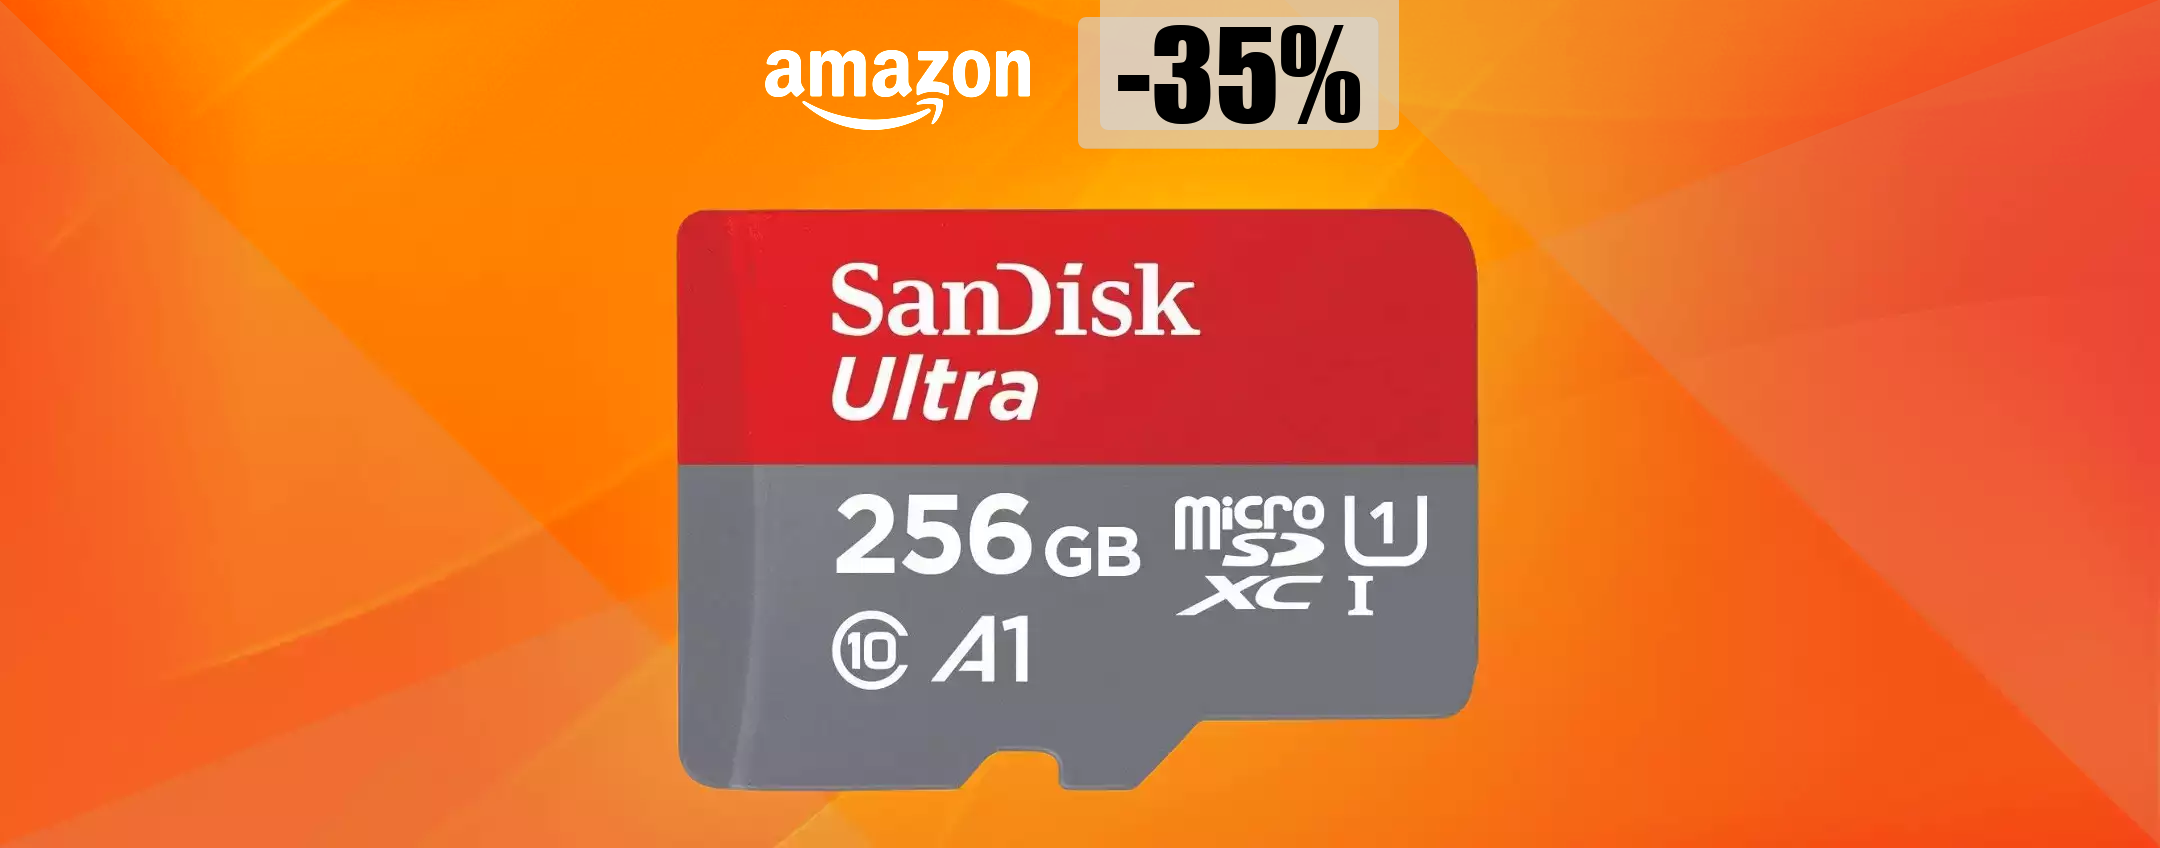 MicroSD SanDisk 256GB, tutto lo spazio che ti serve a soli 41 euro